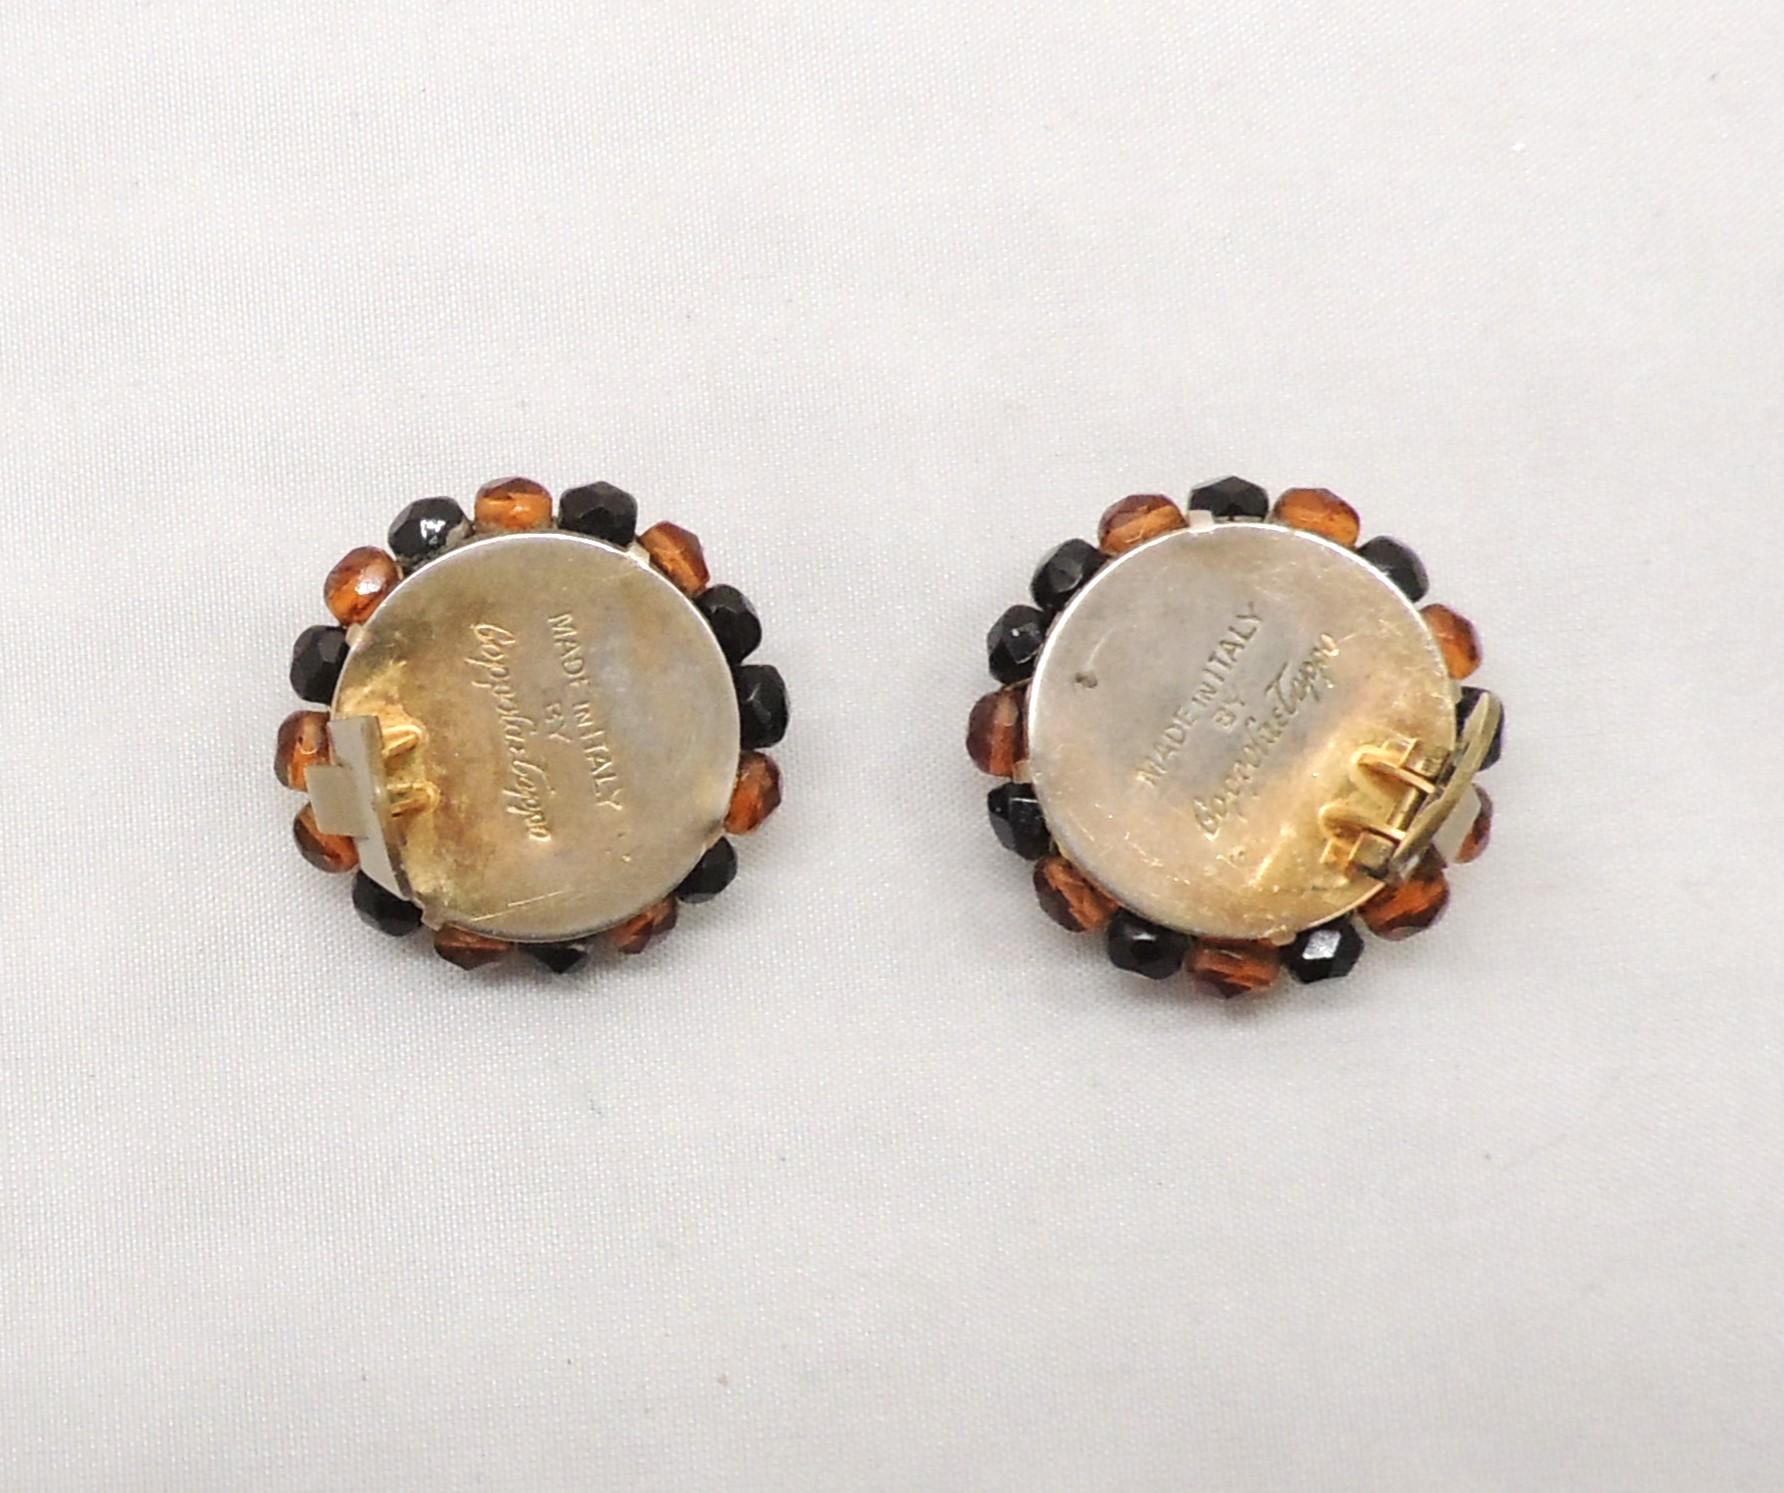 1950er Jahre runde goldfarbene braune und schwarze Perlenohrringe mit Clipverschluss. Gekennzeichnet mit 